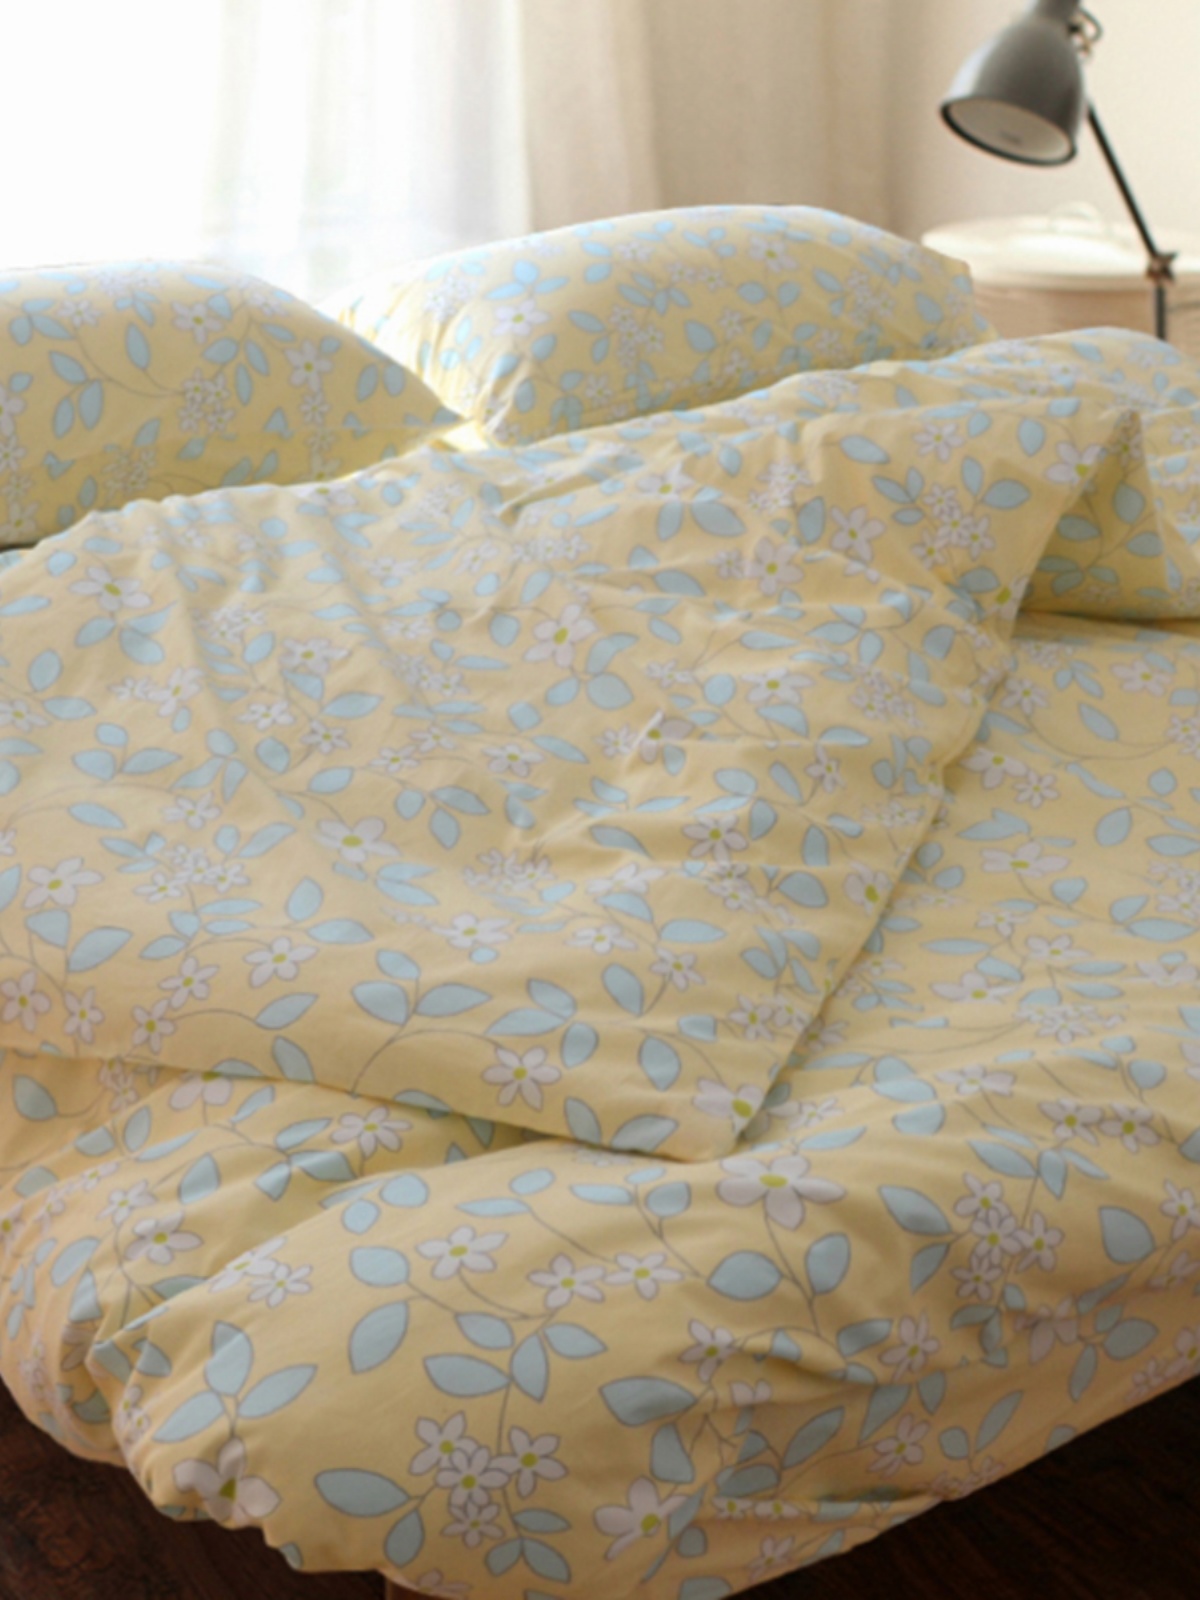 日式田園風全棉四件套床品套件溫暖舒適呵護您的睡眠